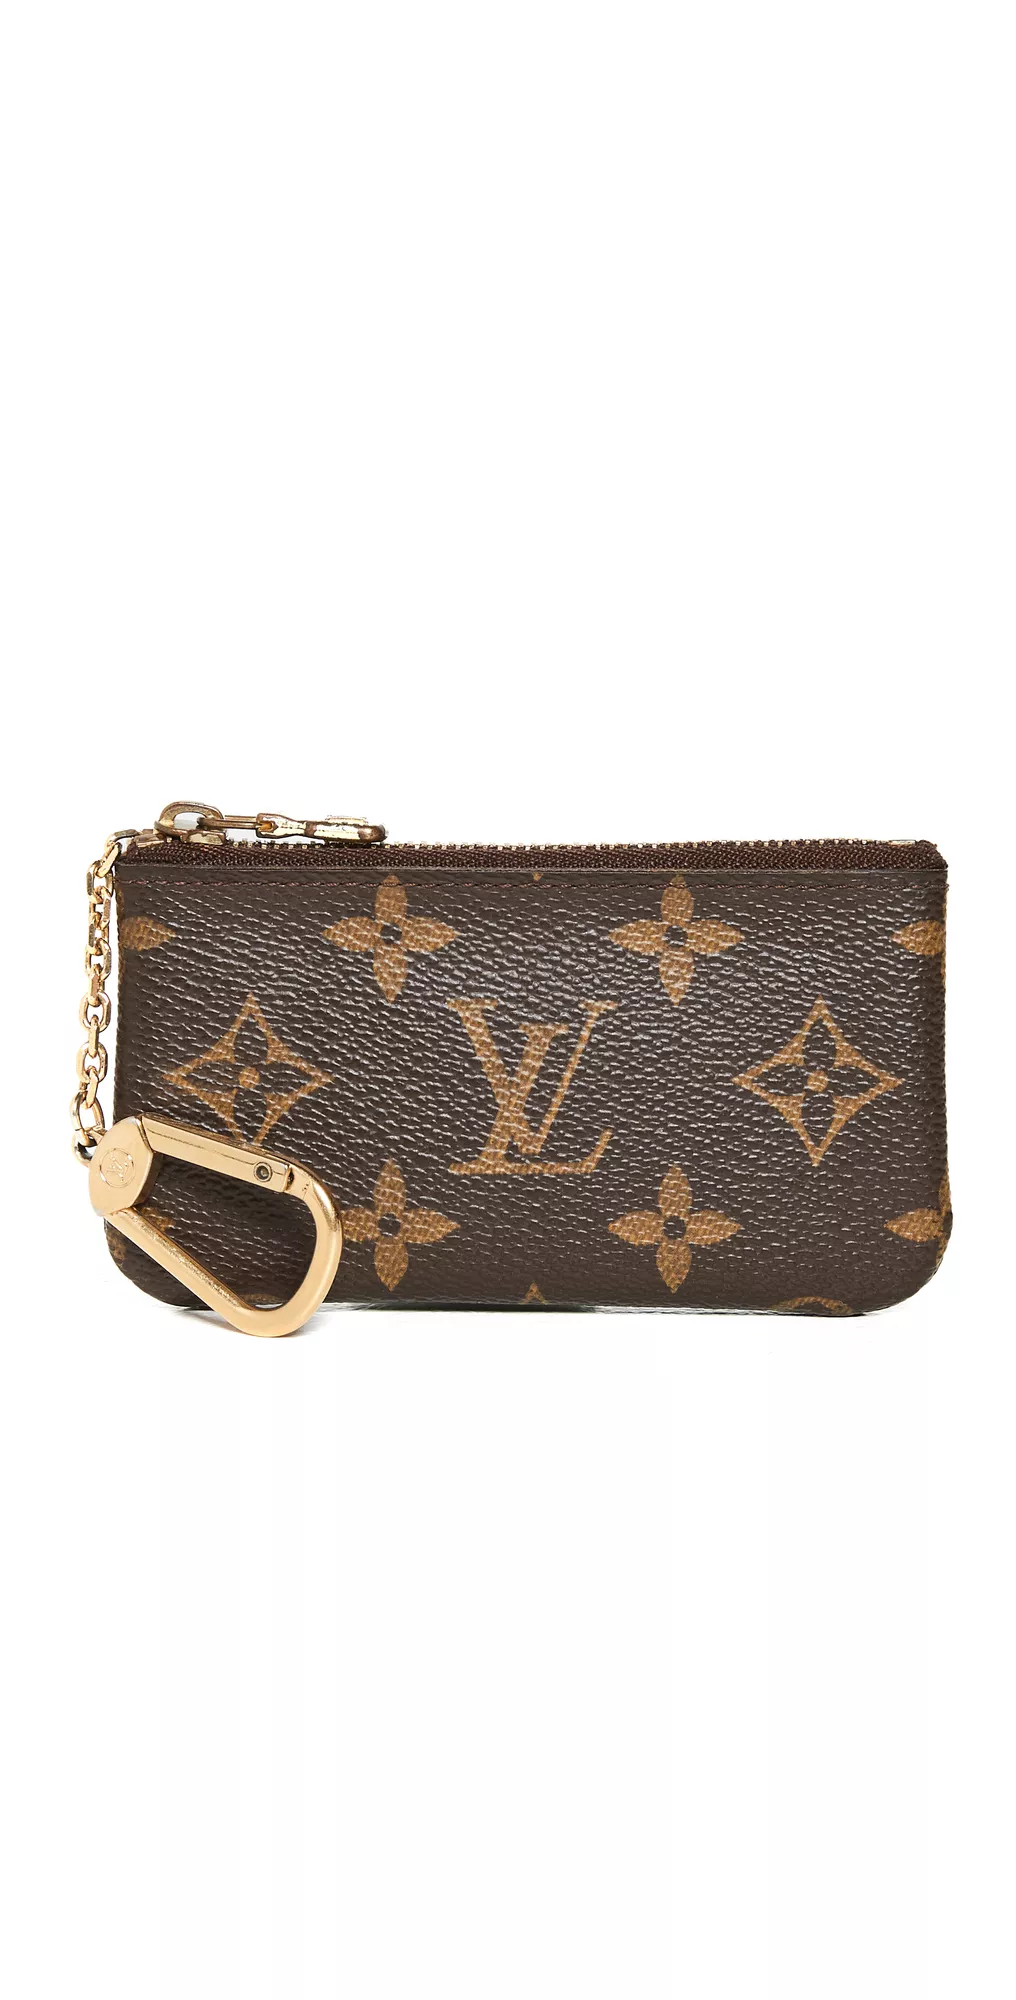 Shopbop Archive Louis Vuitton Tivoli GM Shoulder Bag